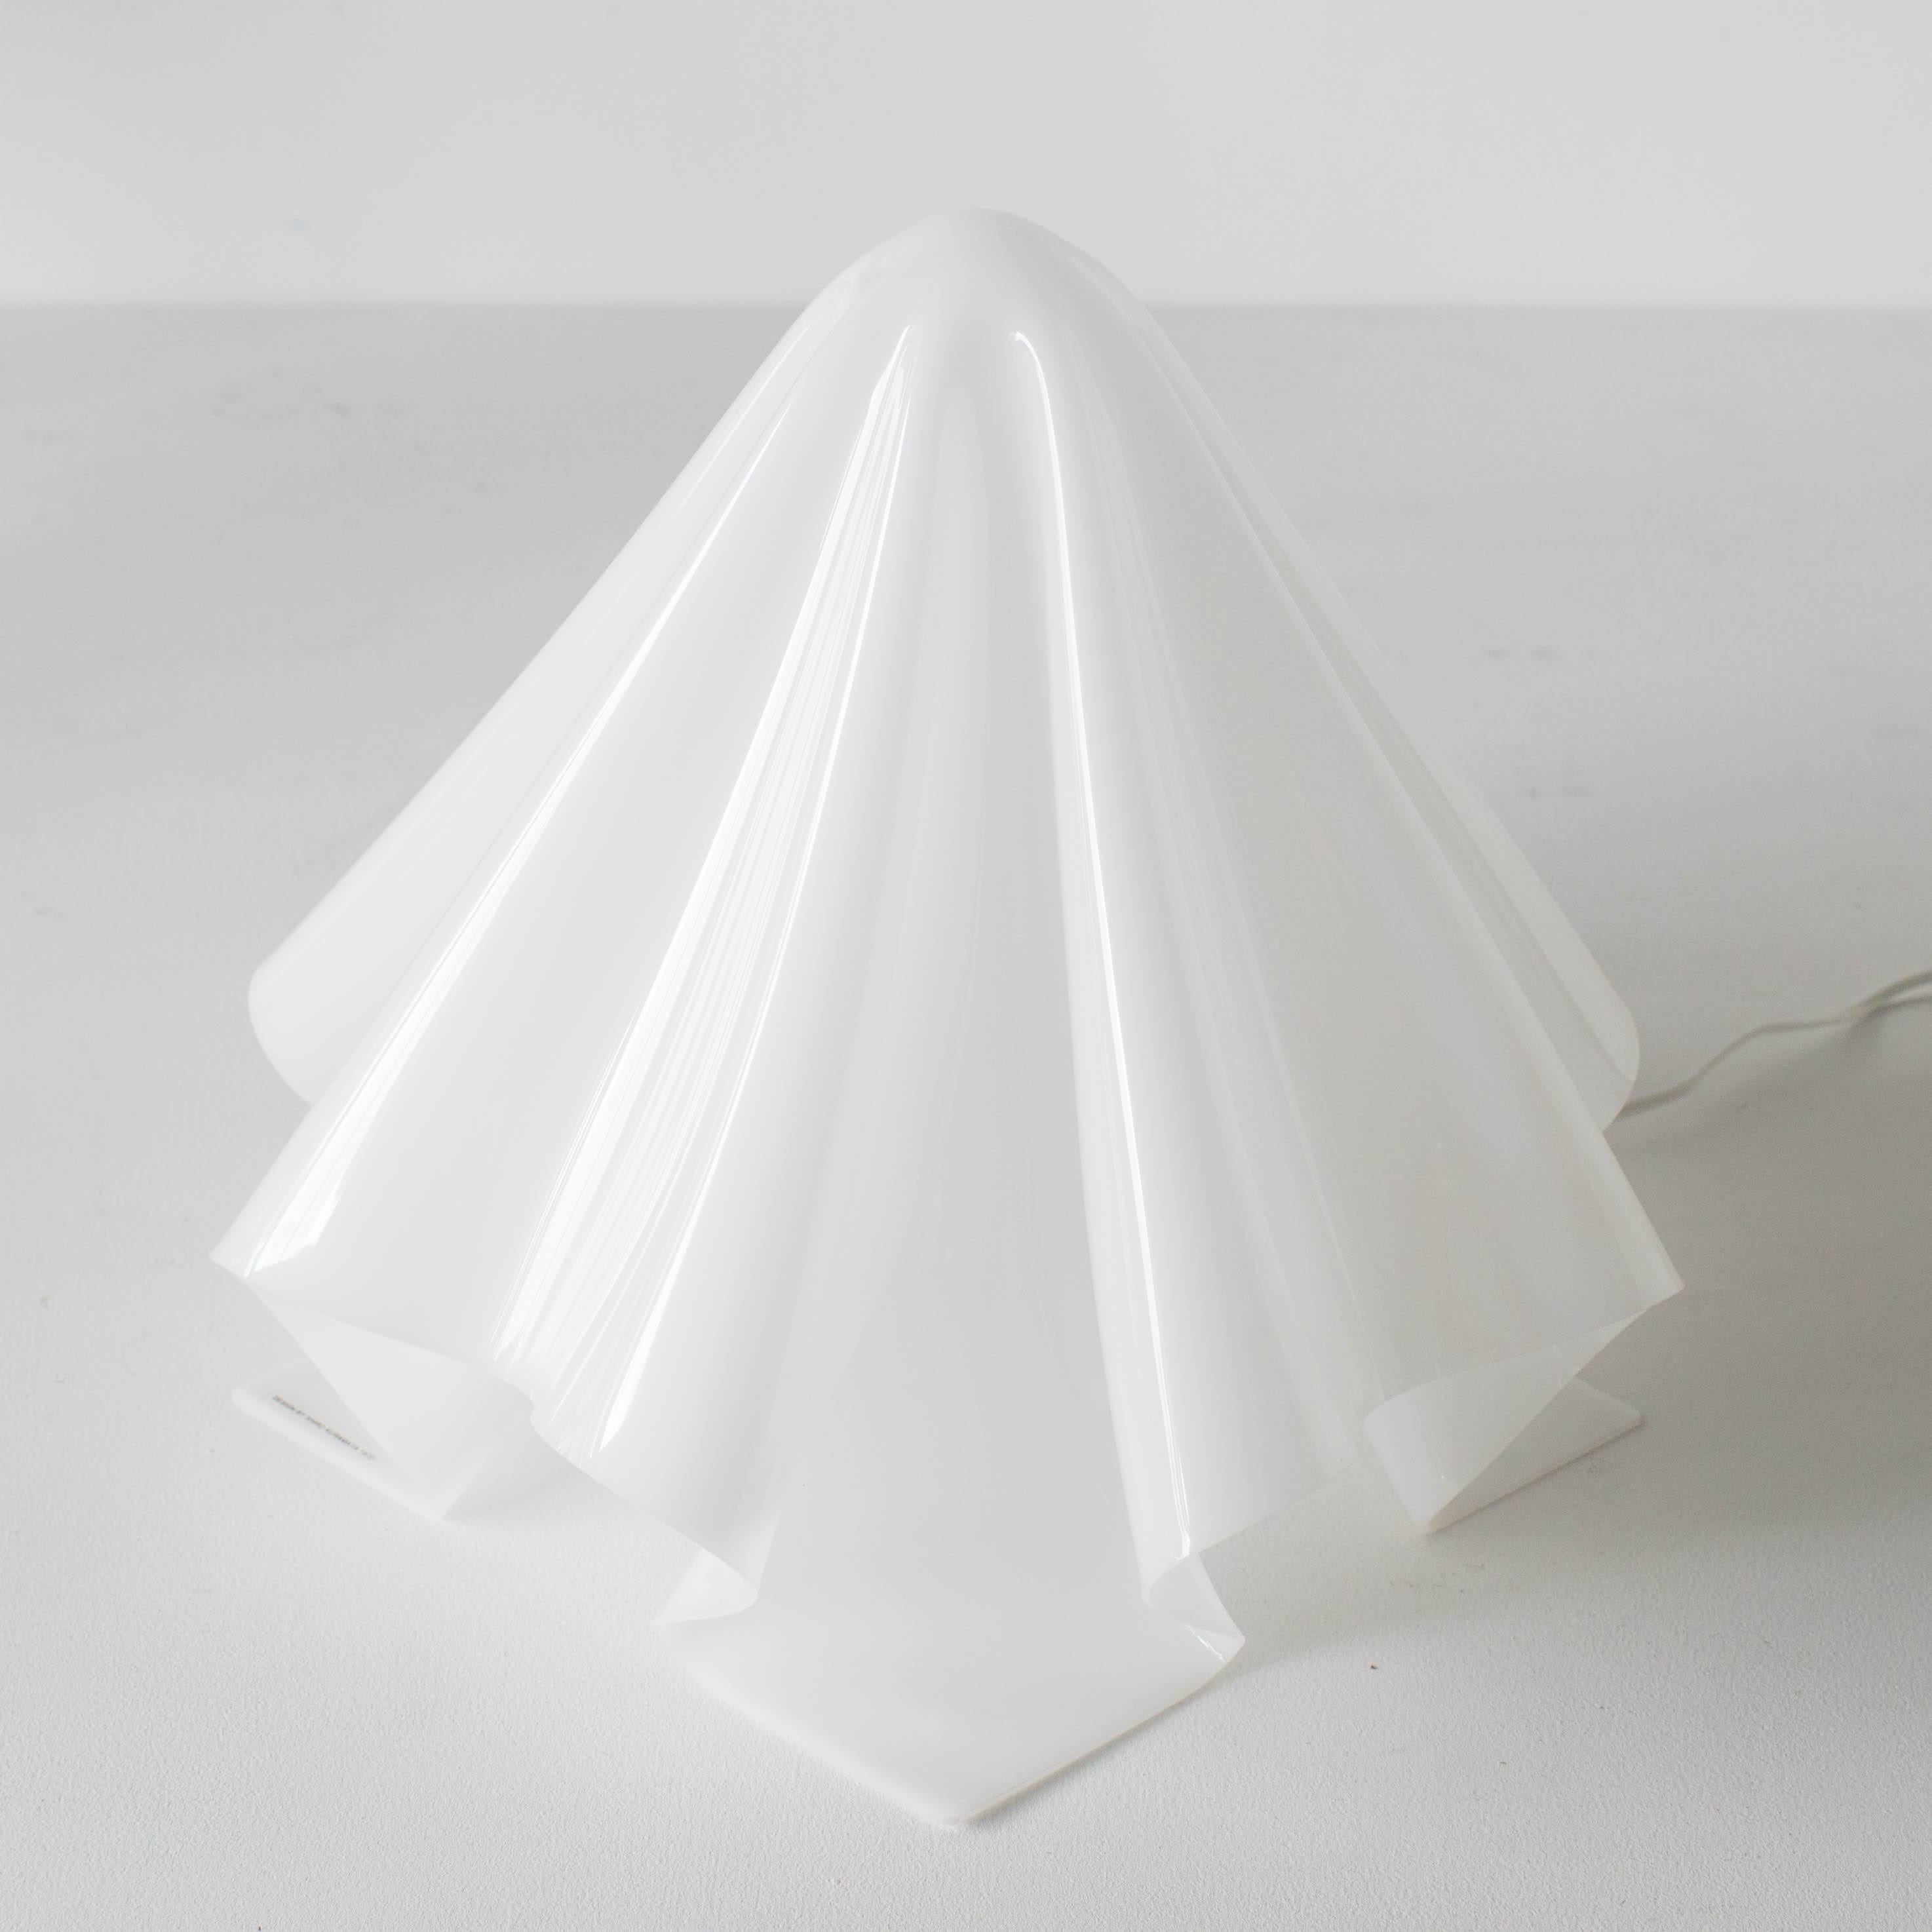 Shiro Kuramata Oba-Q ghost lamp small model. Excellent condition.
     